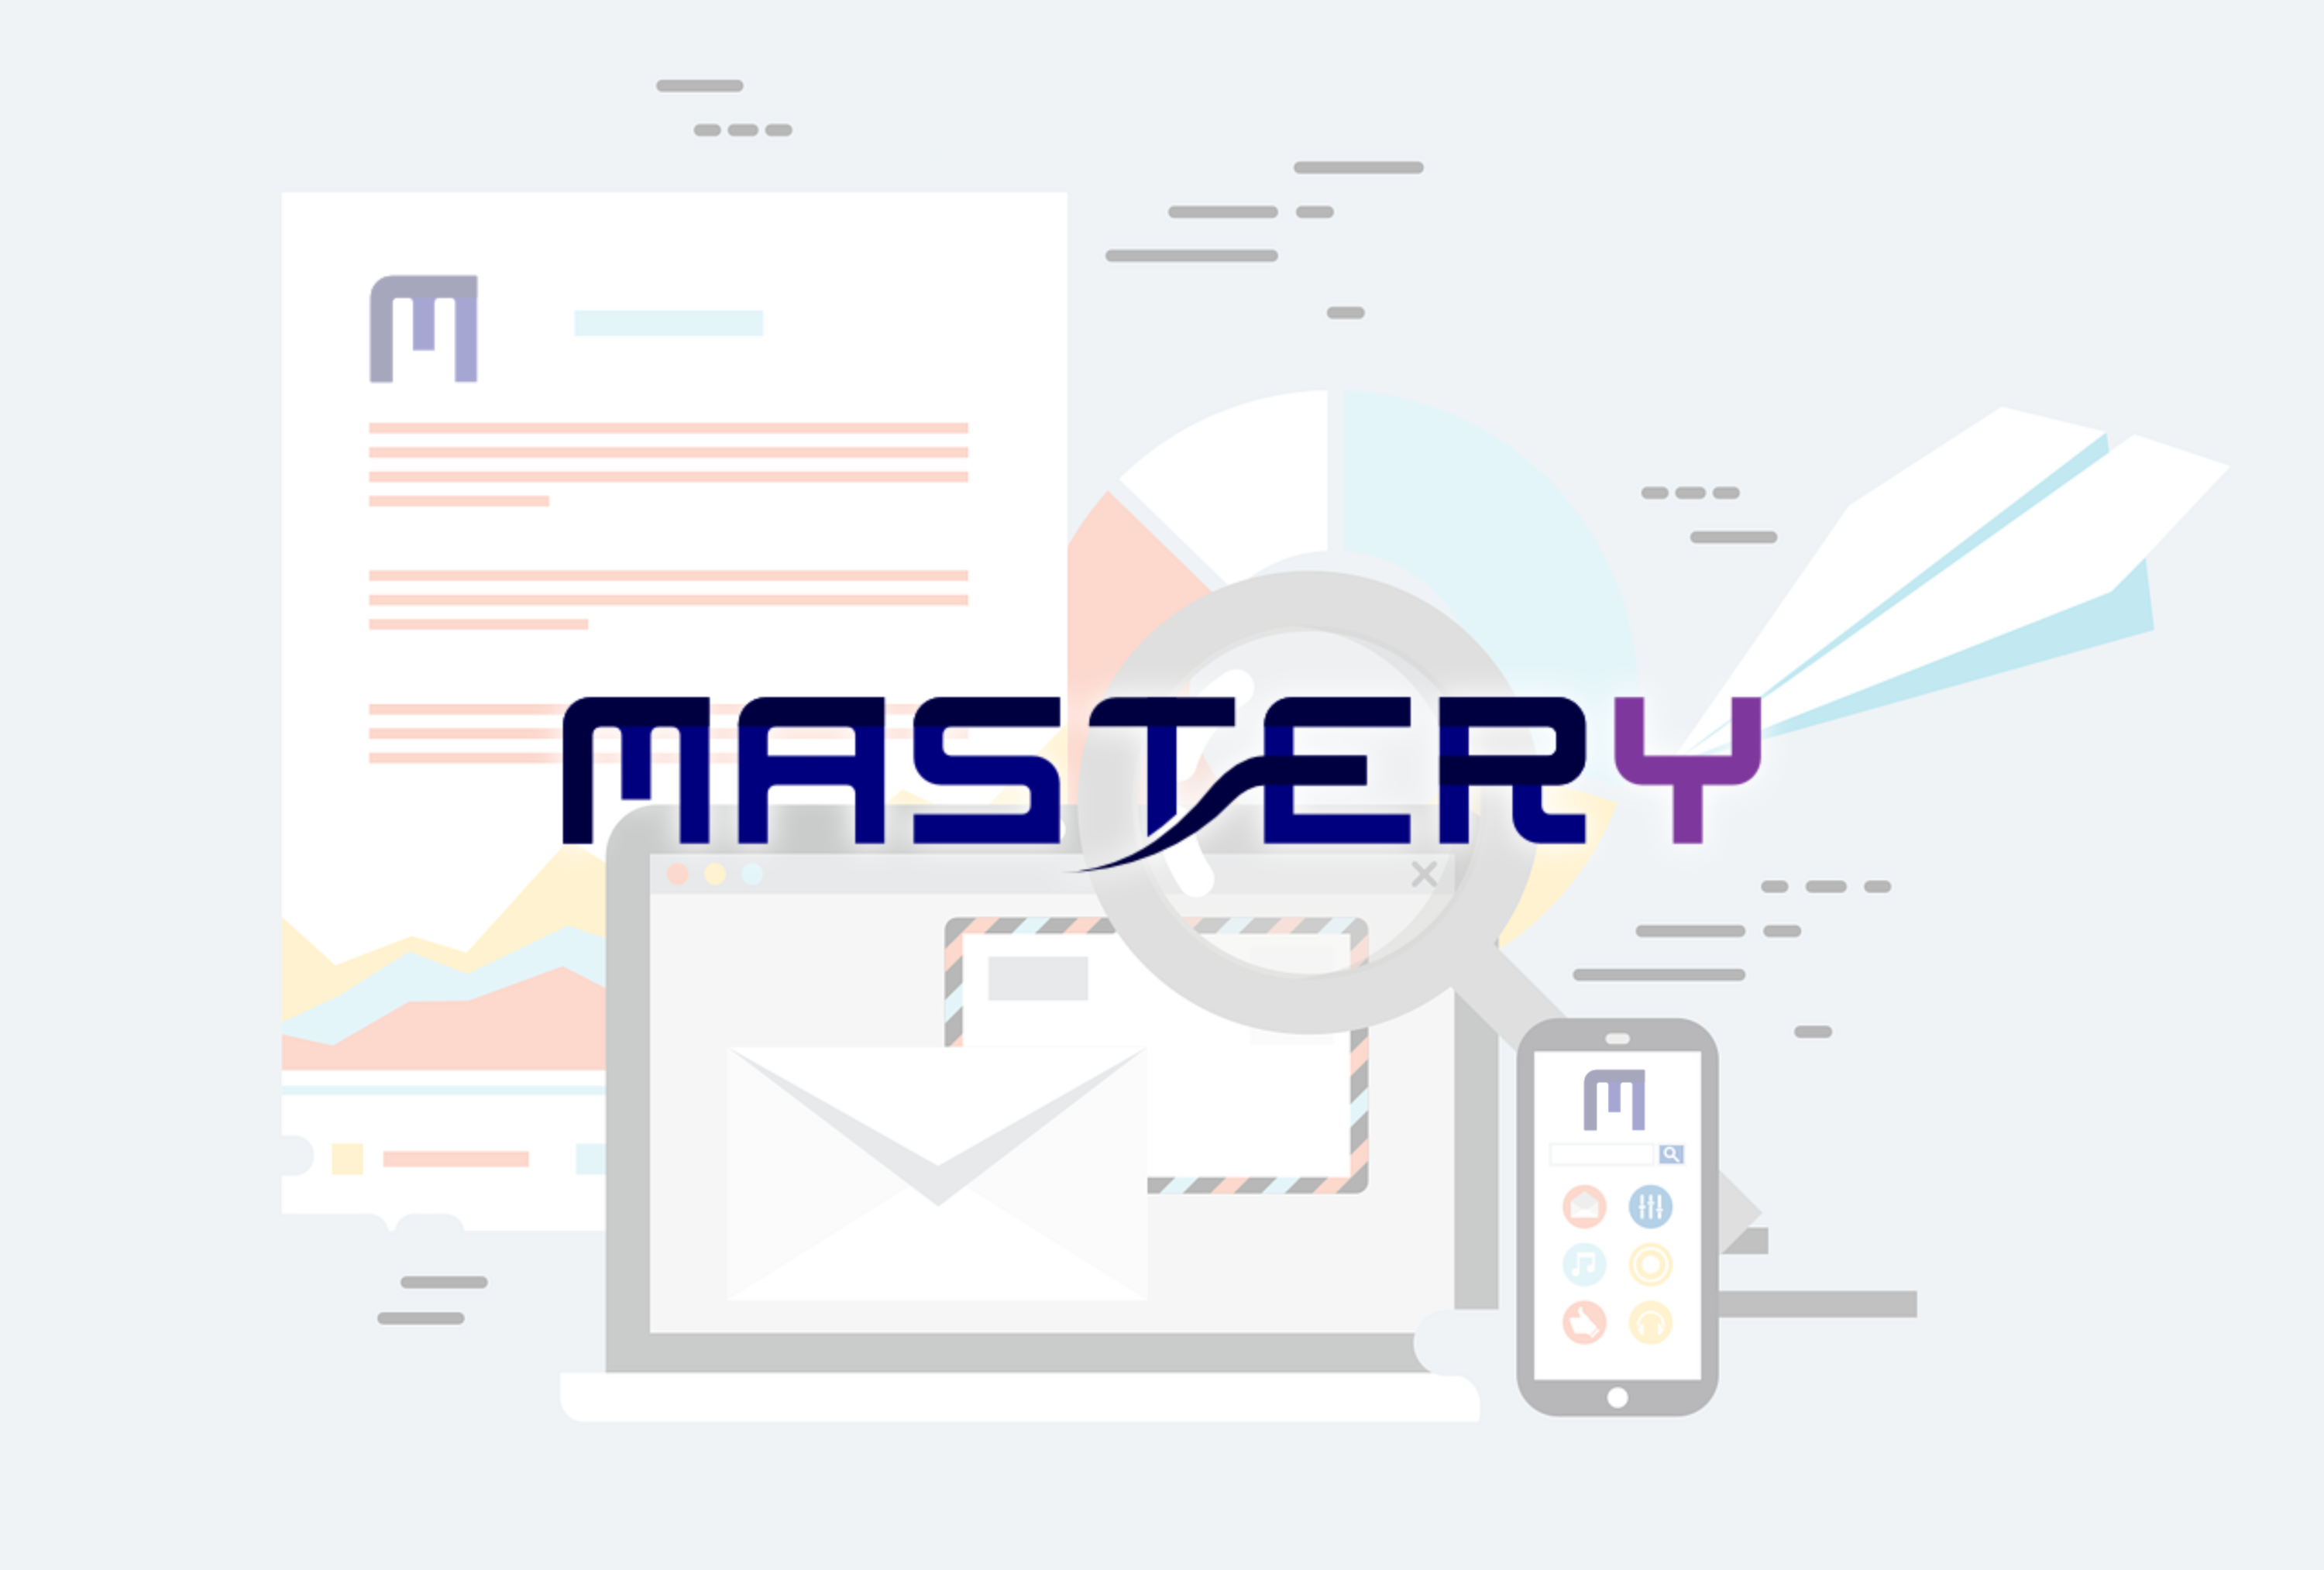 Mastery Blog Title Image